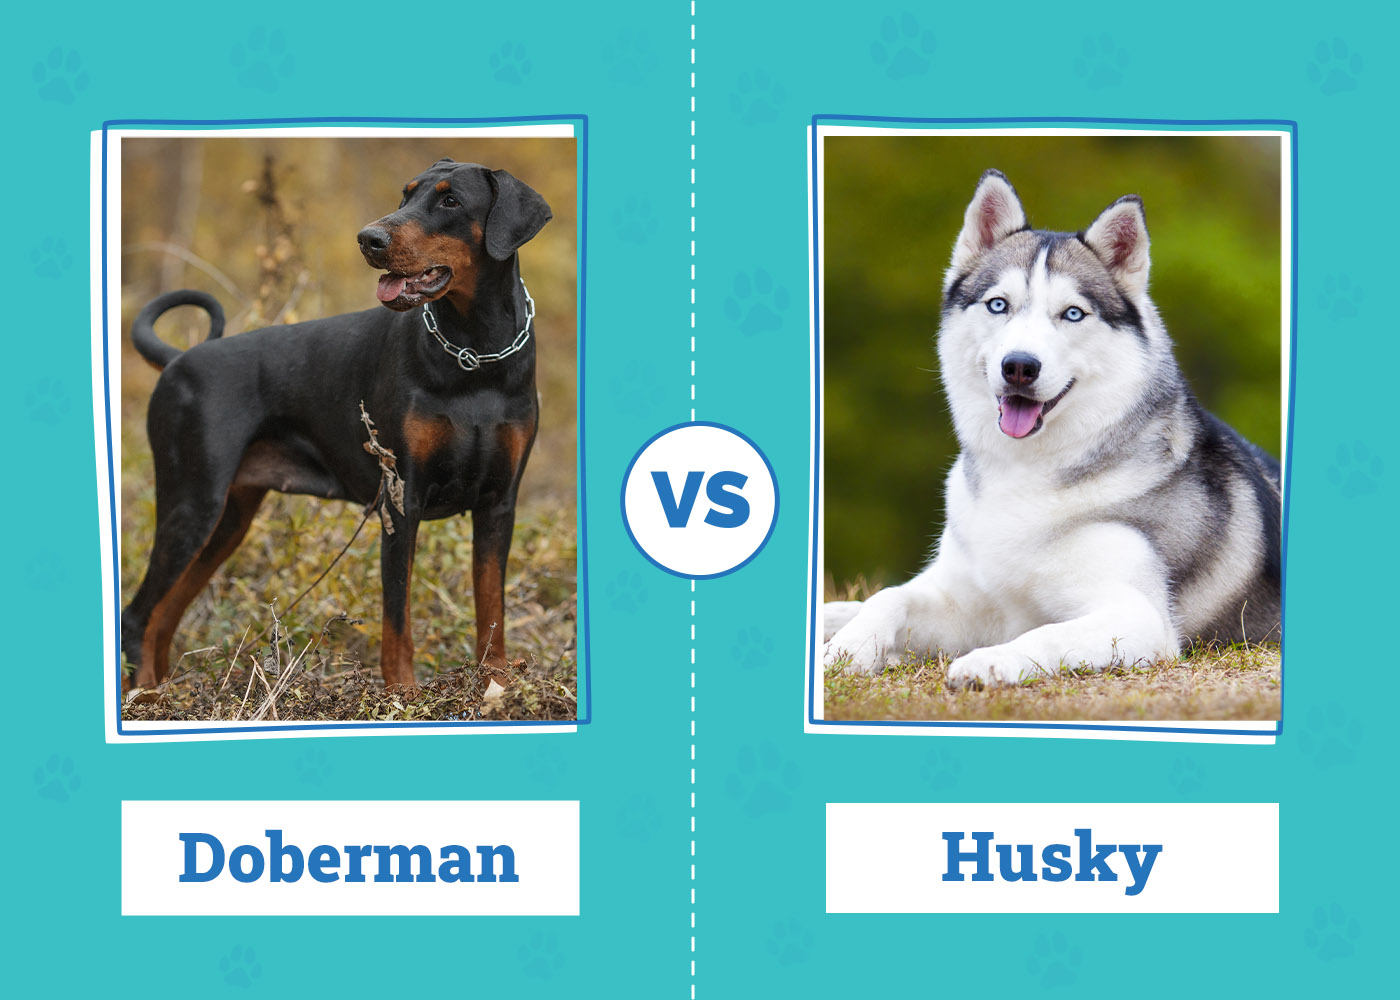 Doberman vs. Husky